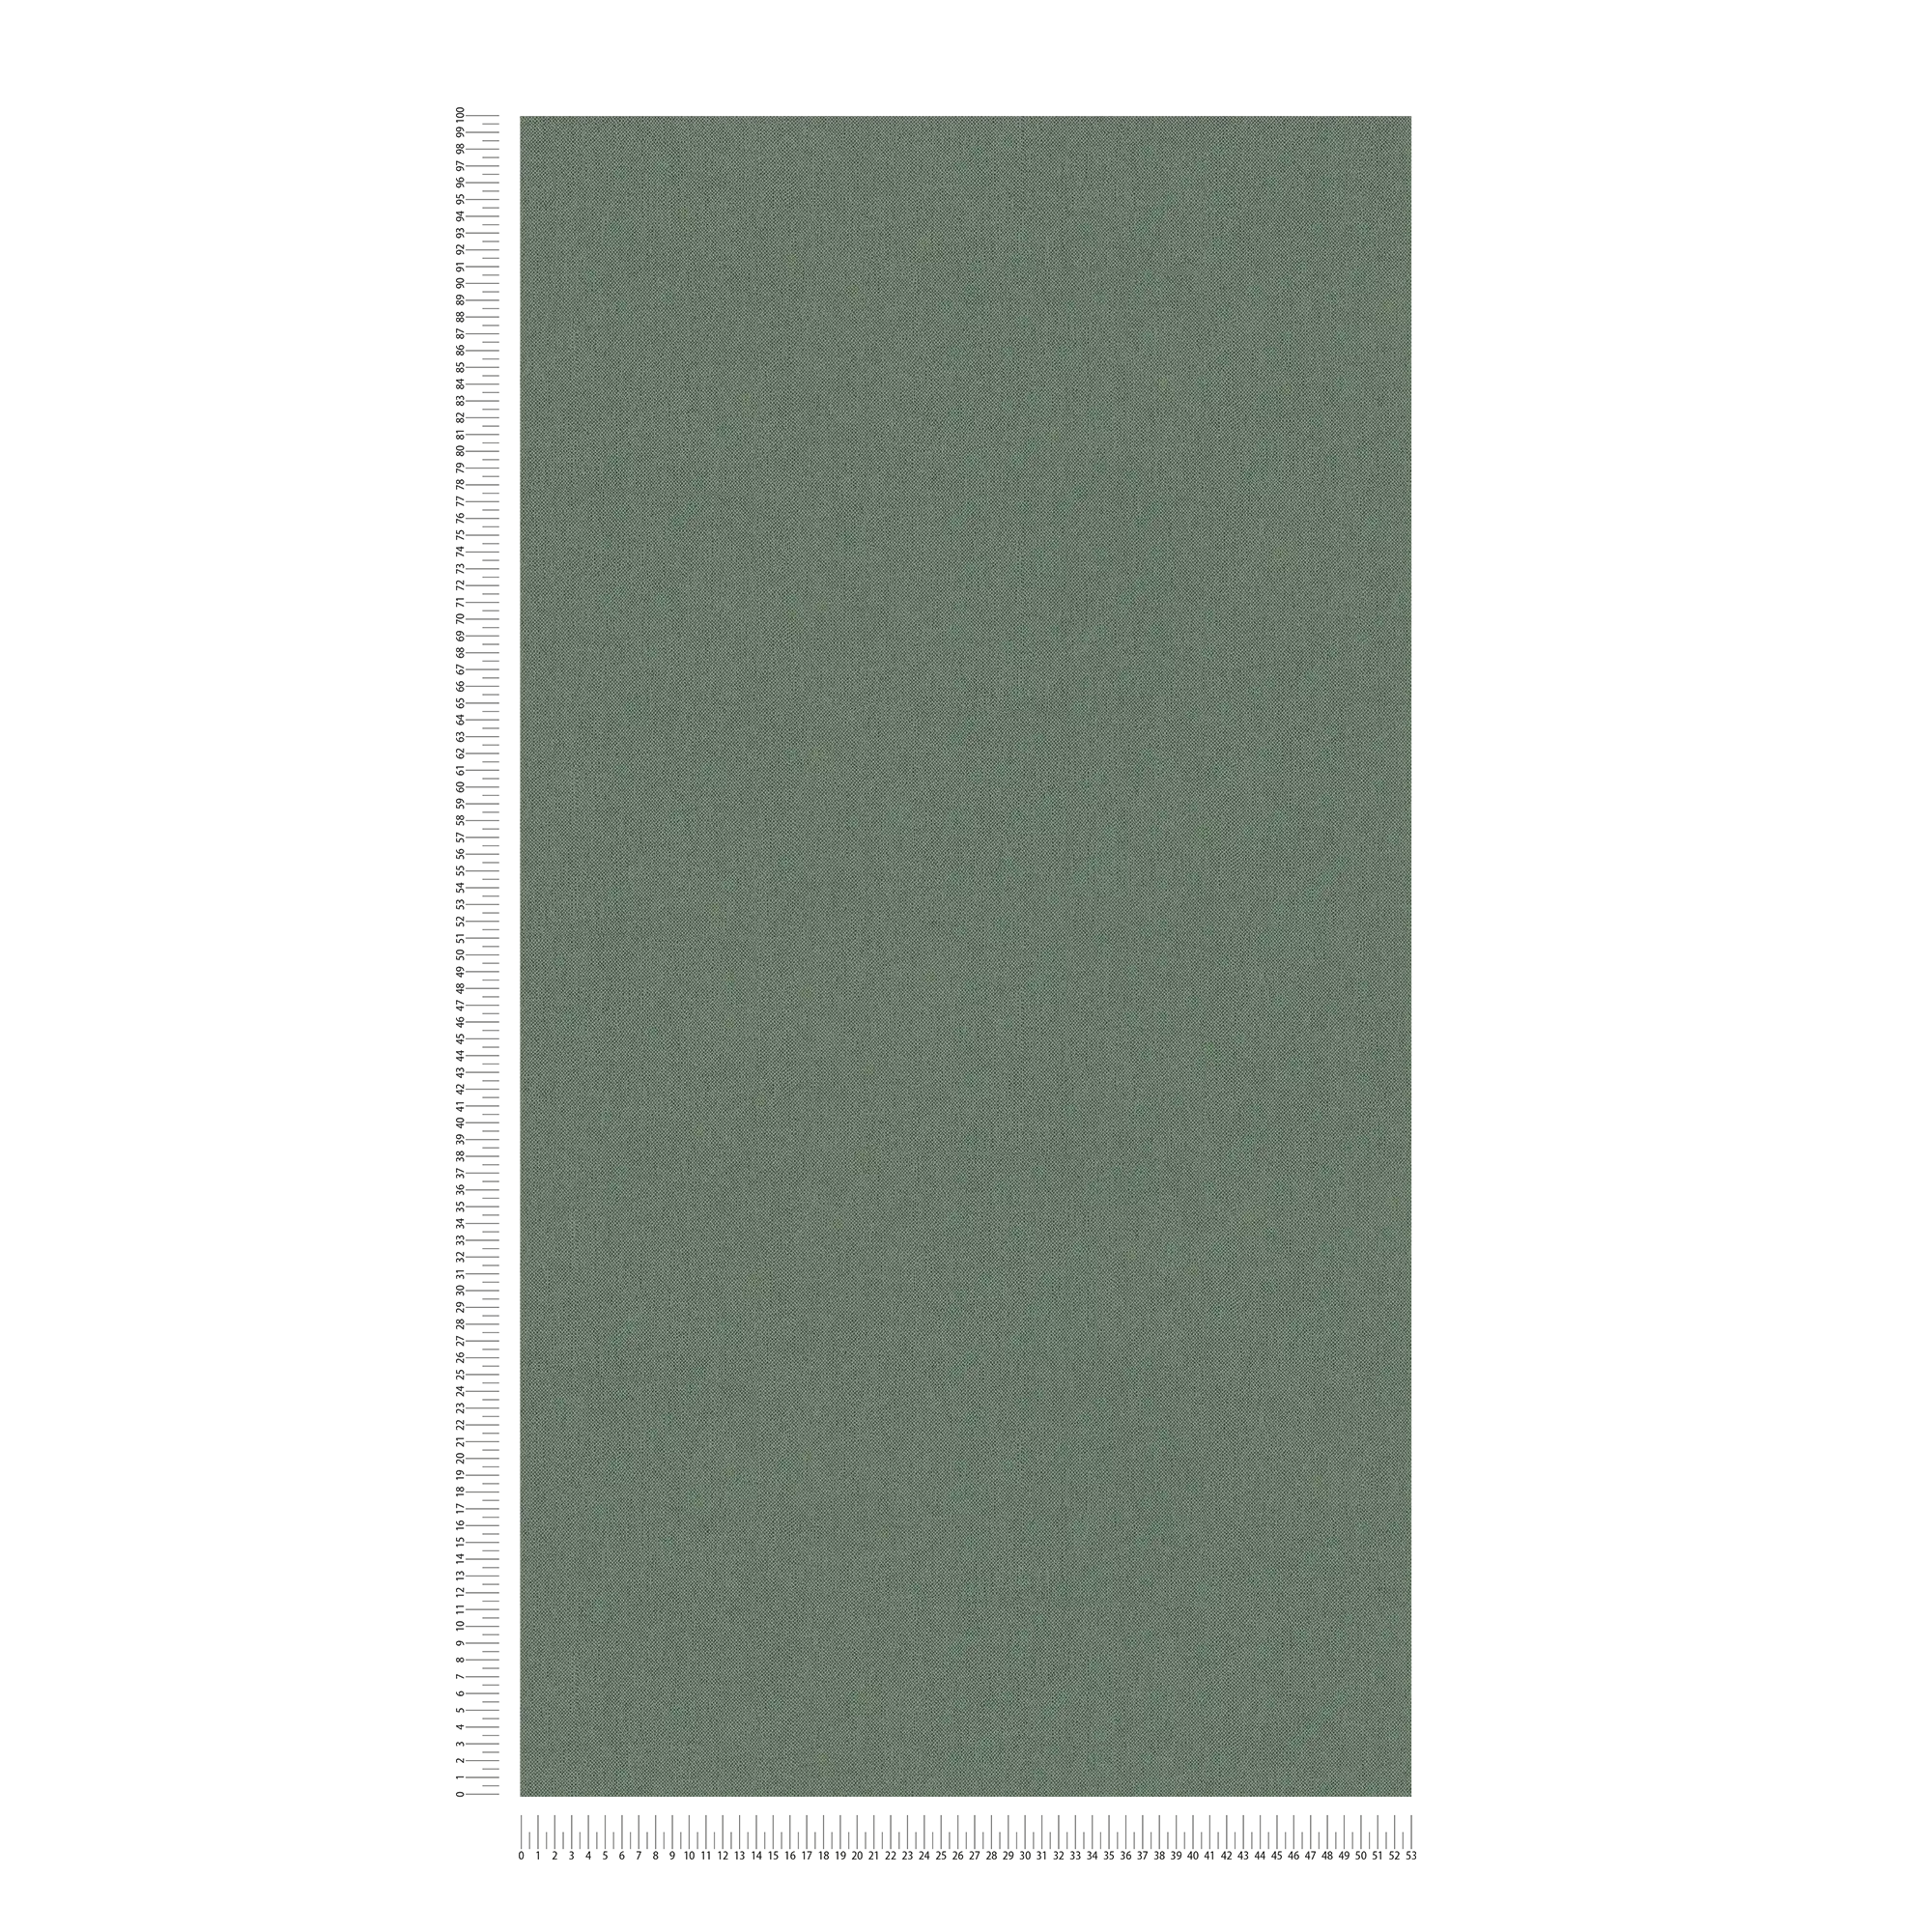             Effen behangpapier dennengroen met textielstructuur - groen
        